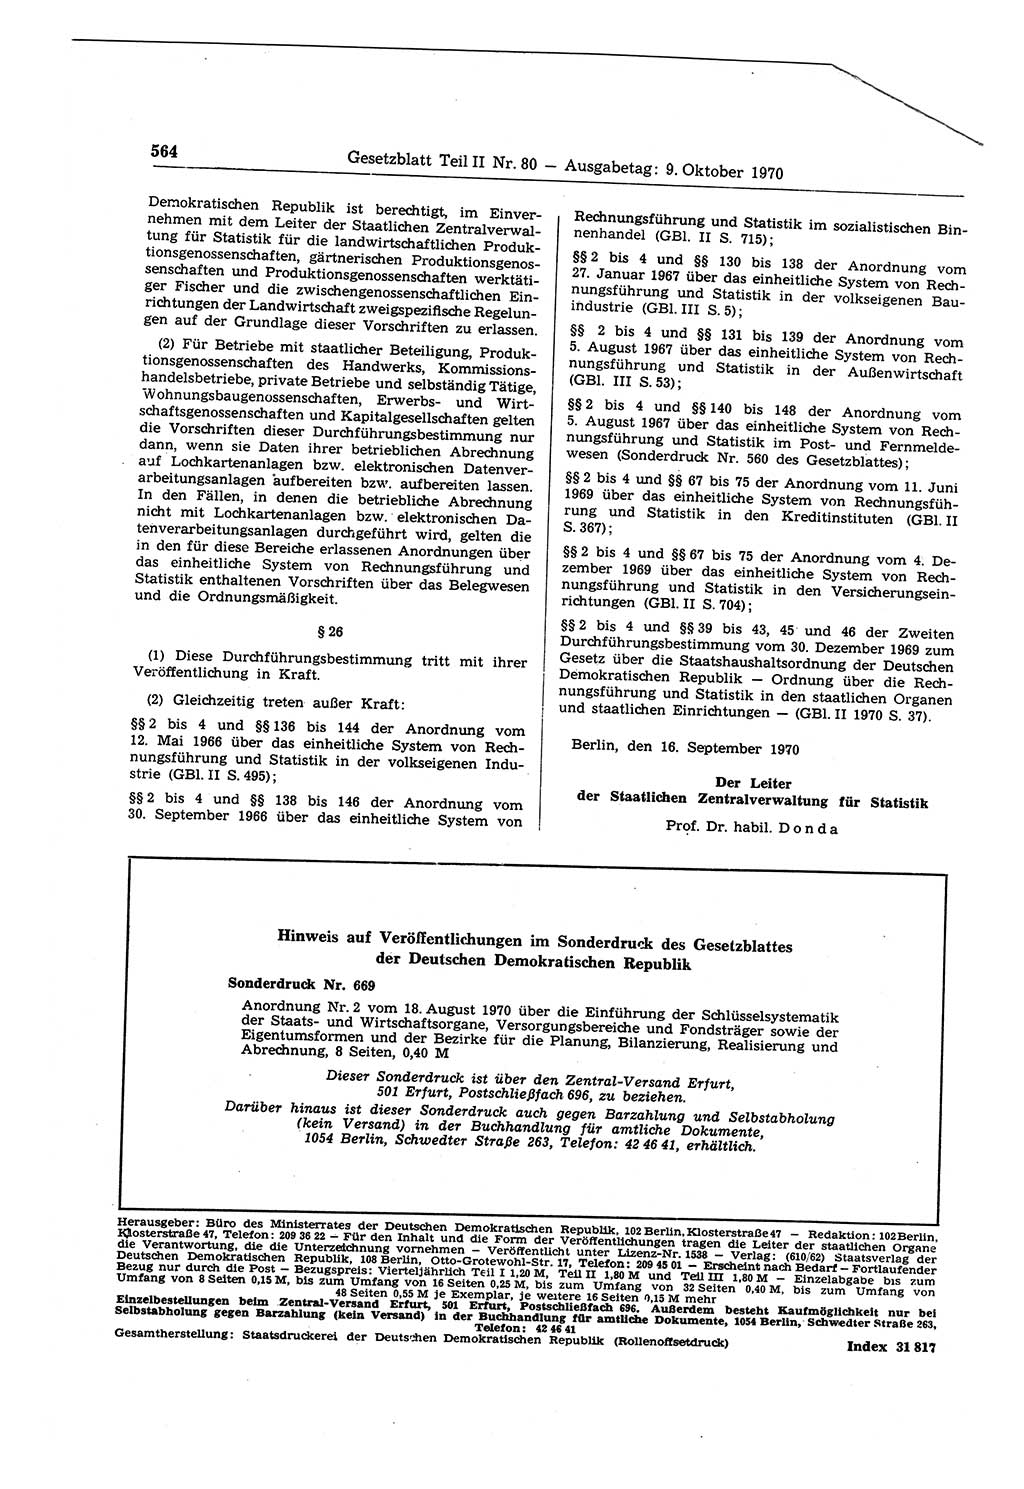 Gesetzblatt (GBl.) der Deutschen Demokratischen Republik (DDR) Teil ⅠⅠ 1970, Seite 564 (GBl. DDR ⅠⅠ 1970, S. 564)